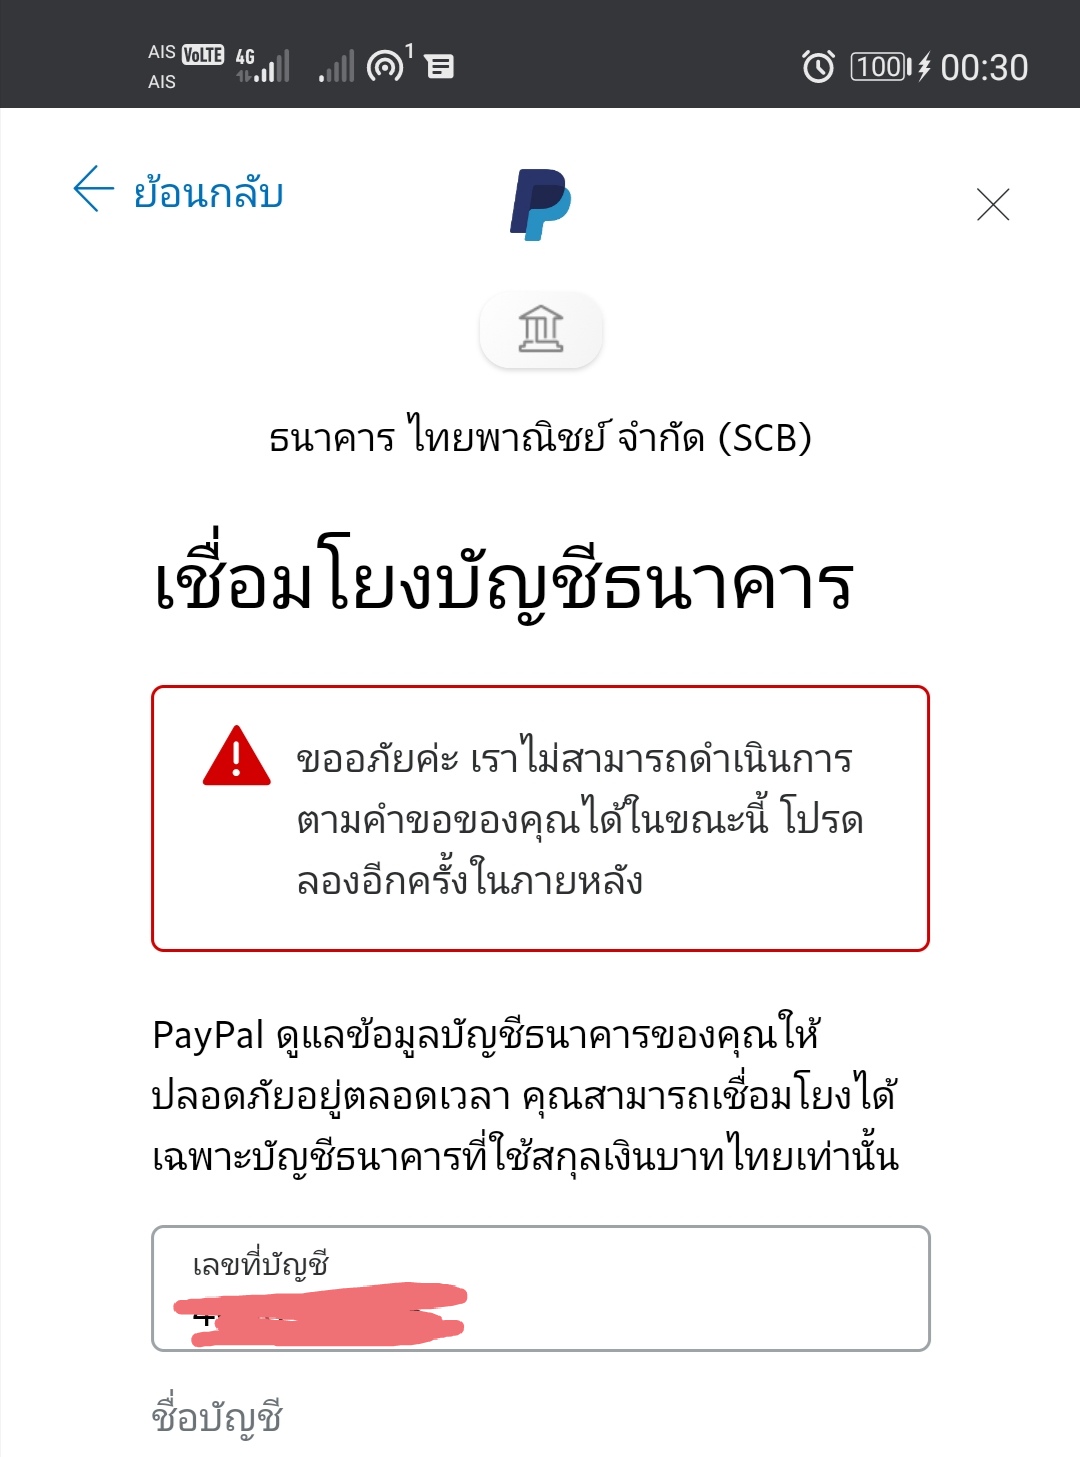 Paypal เชื่อมโยงบัญชีธนาคารไทยพาณิชย์​ไม่ได้ ช่วยหน่อยยครับ​ - Pantip